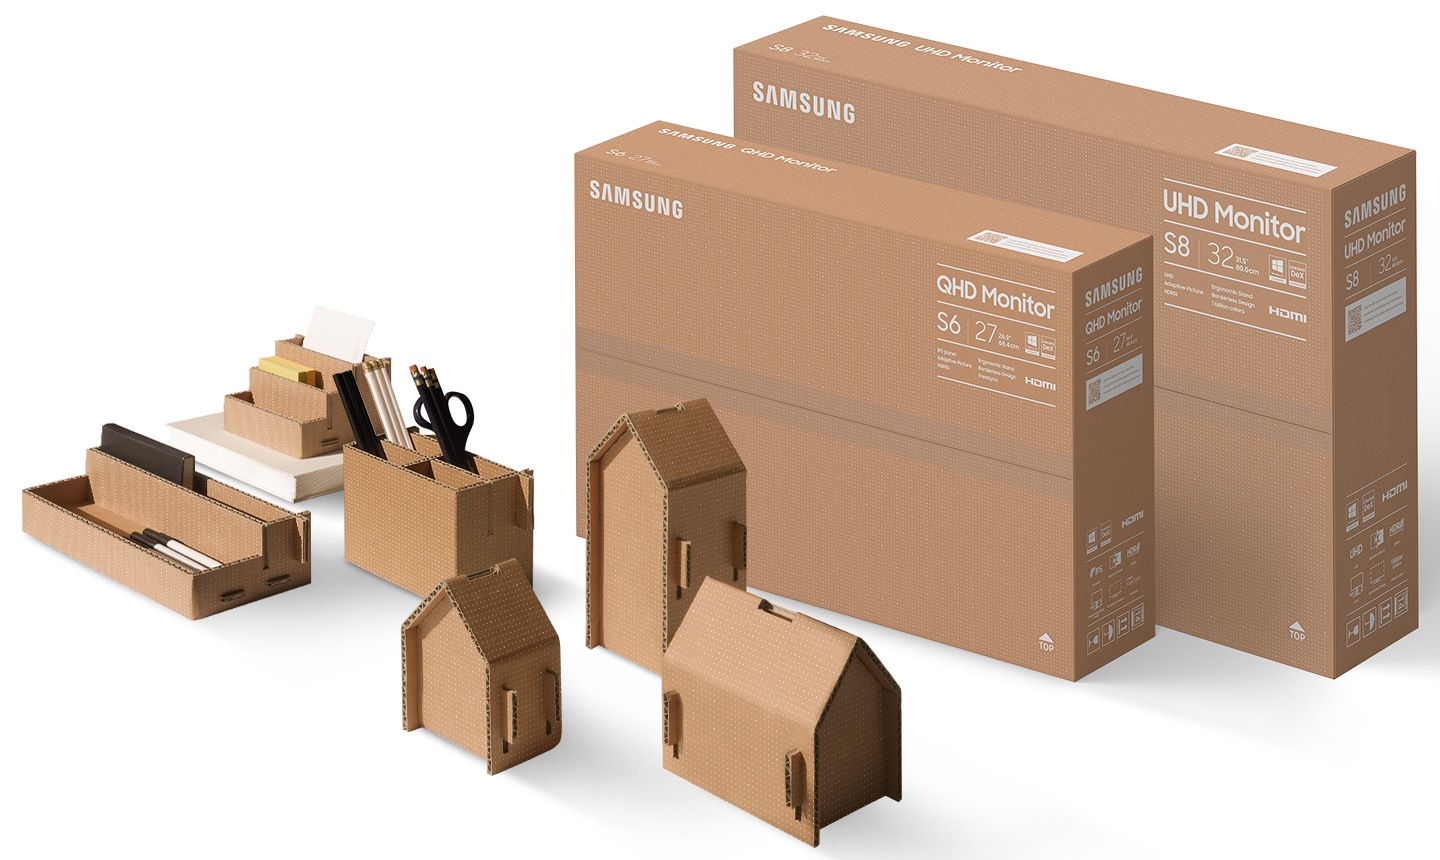 K dispozici jsou balicí krabice S8 32 'a S6 27' a před nimi jsou krabicové držáky tužek, organizéry a drobné předměty.